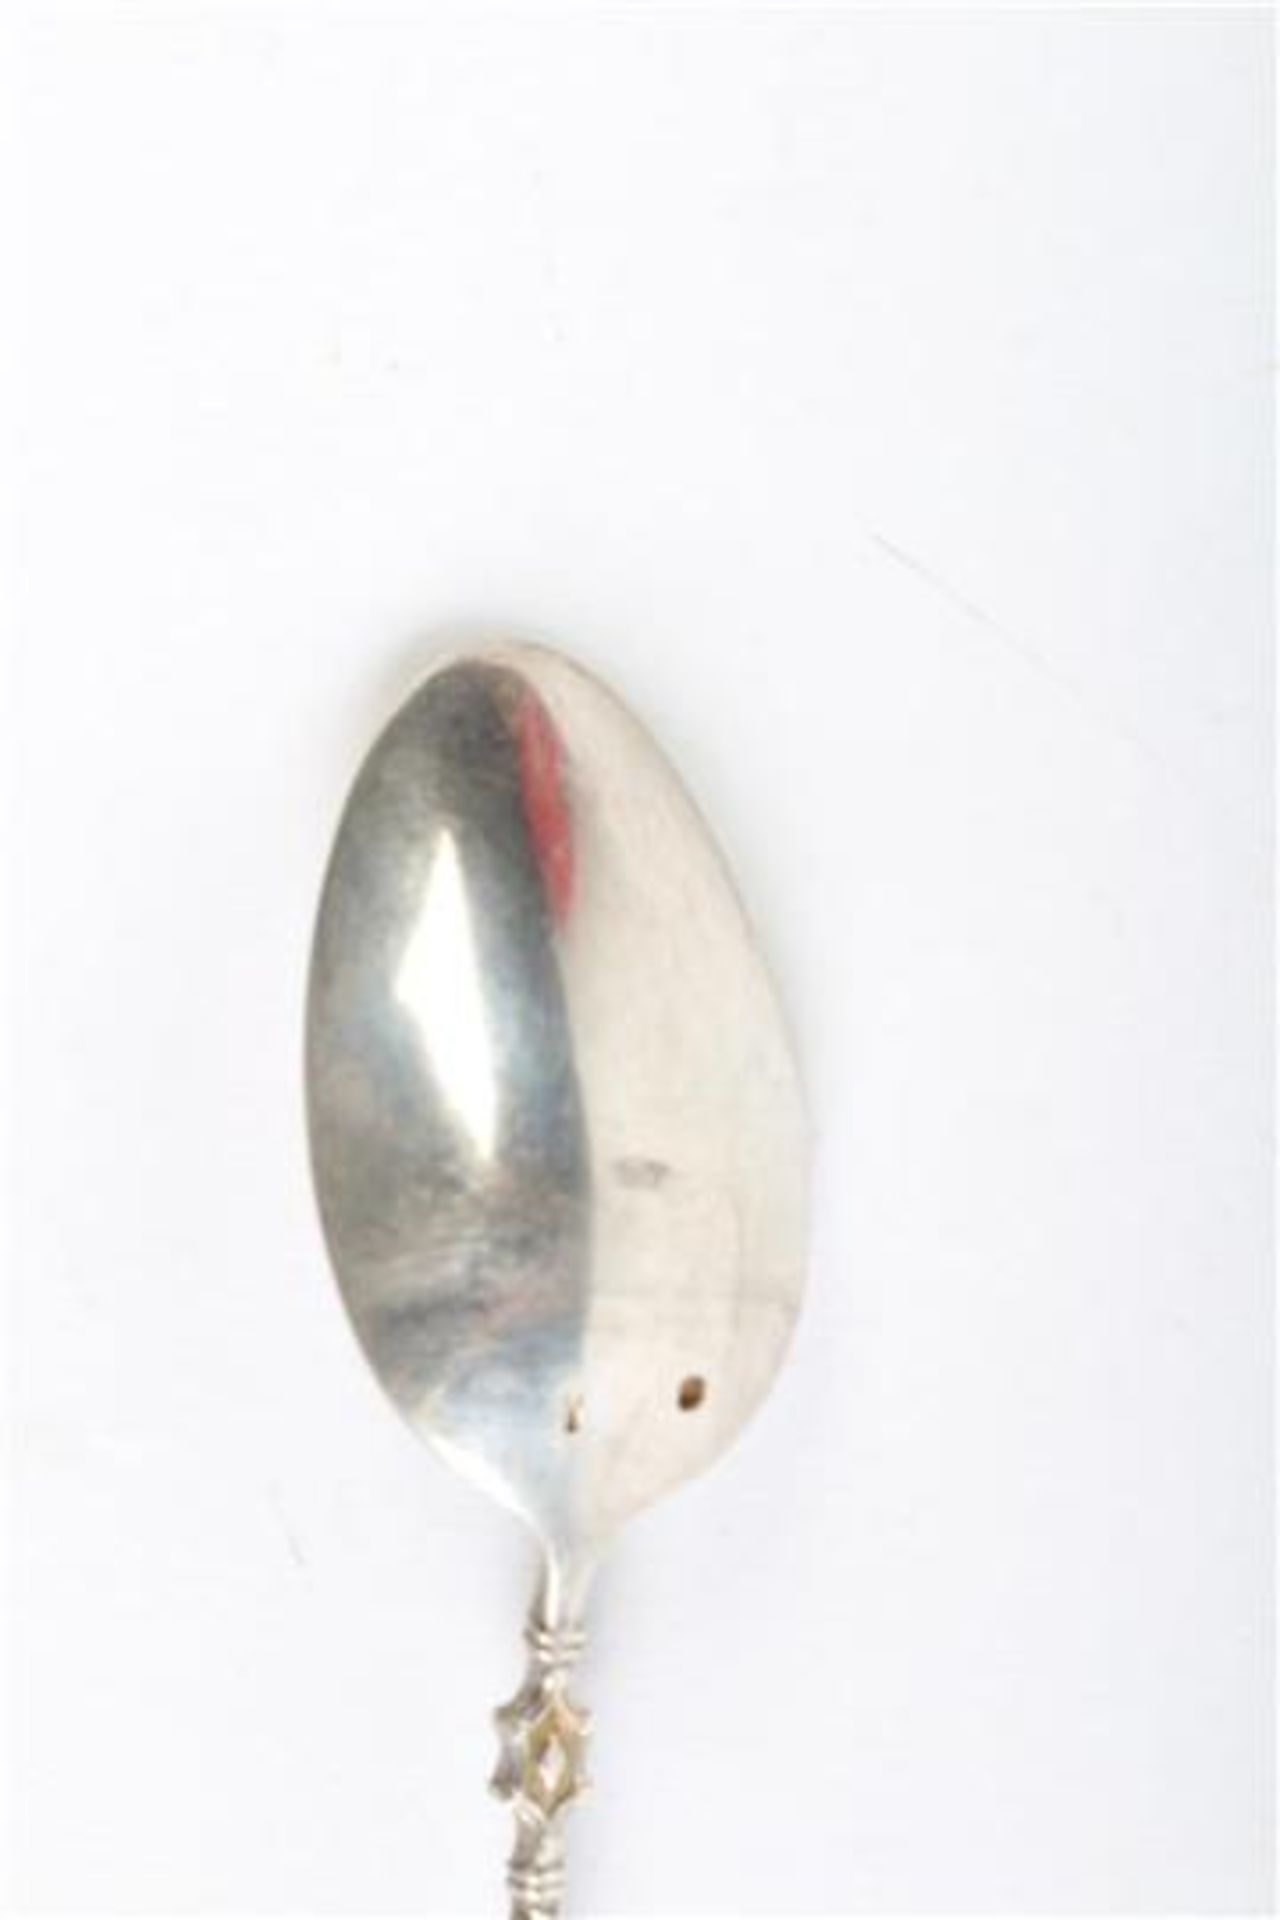 Twaalf zilveren bokkenpootlepeltjes, Van Kempen Holland. Gewicht: 121.6 g. - Bild 2 aus 2